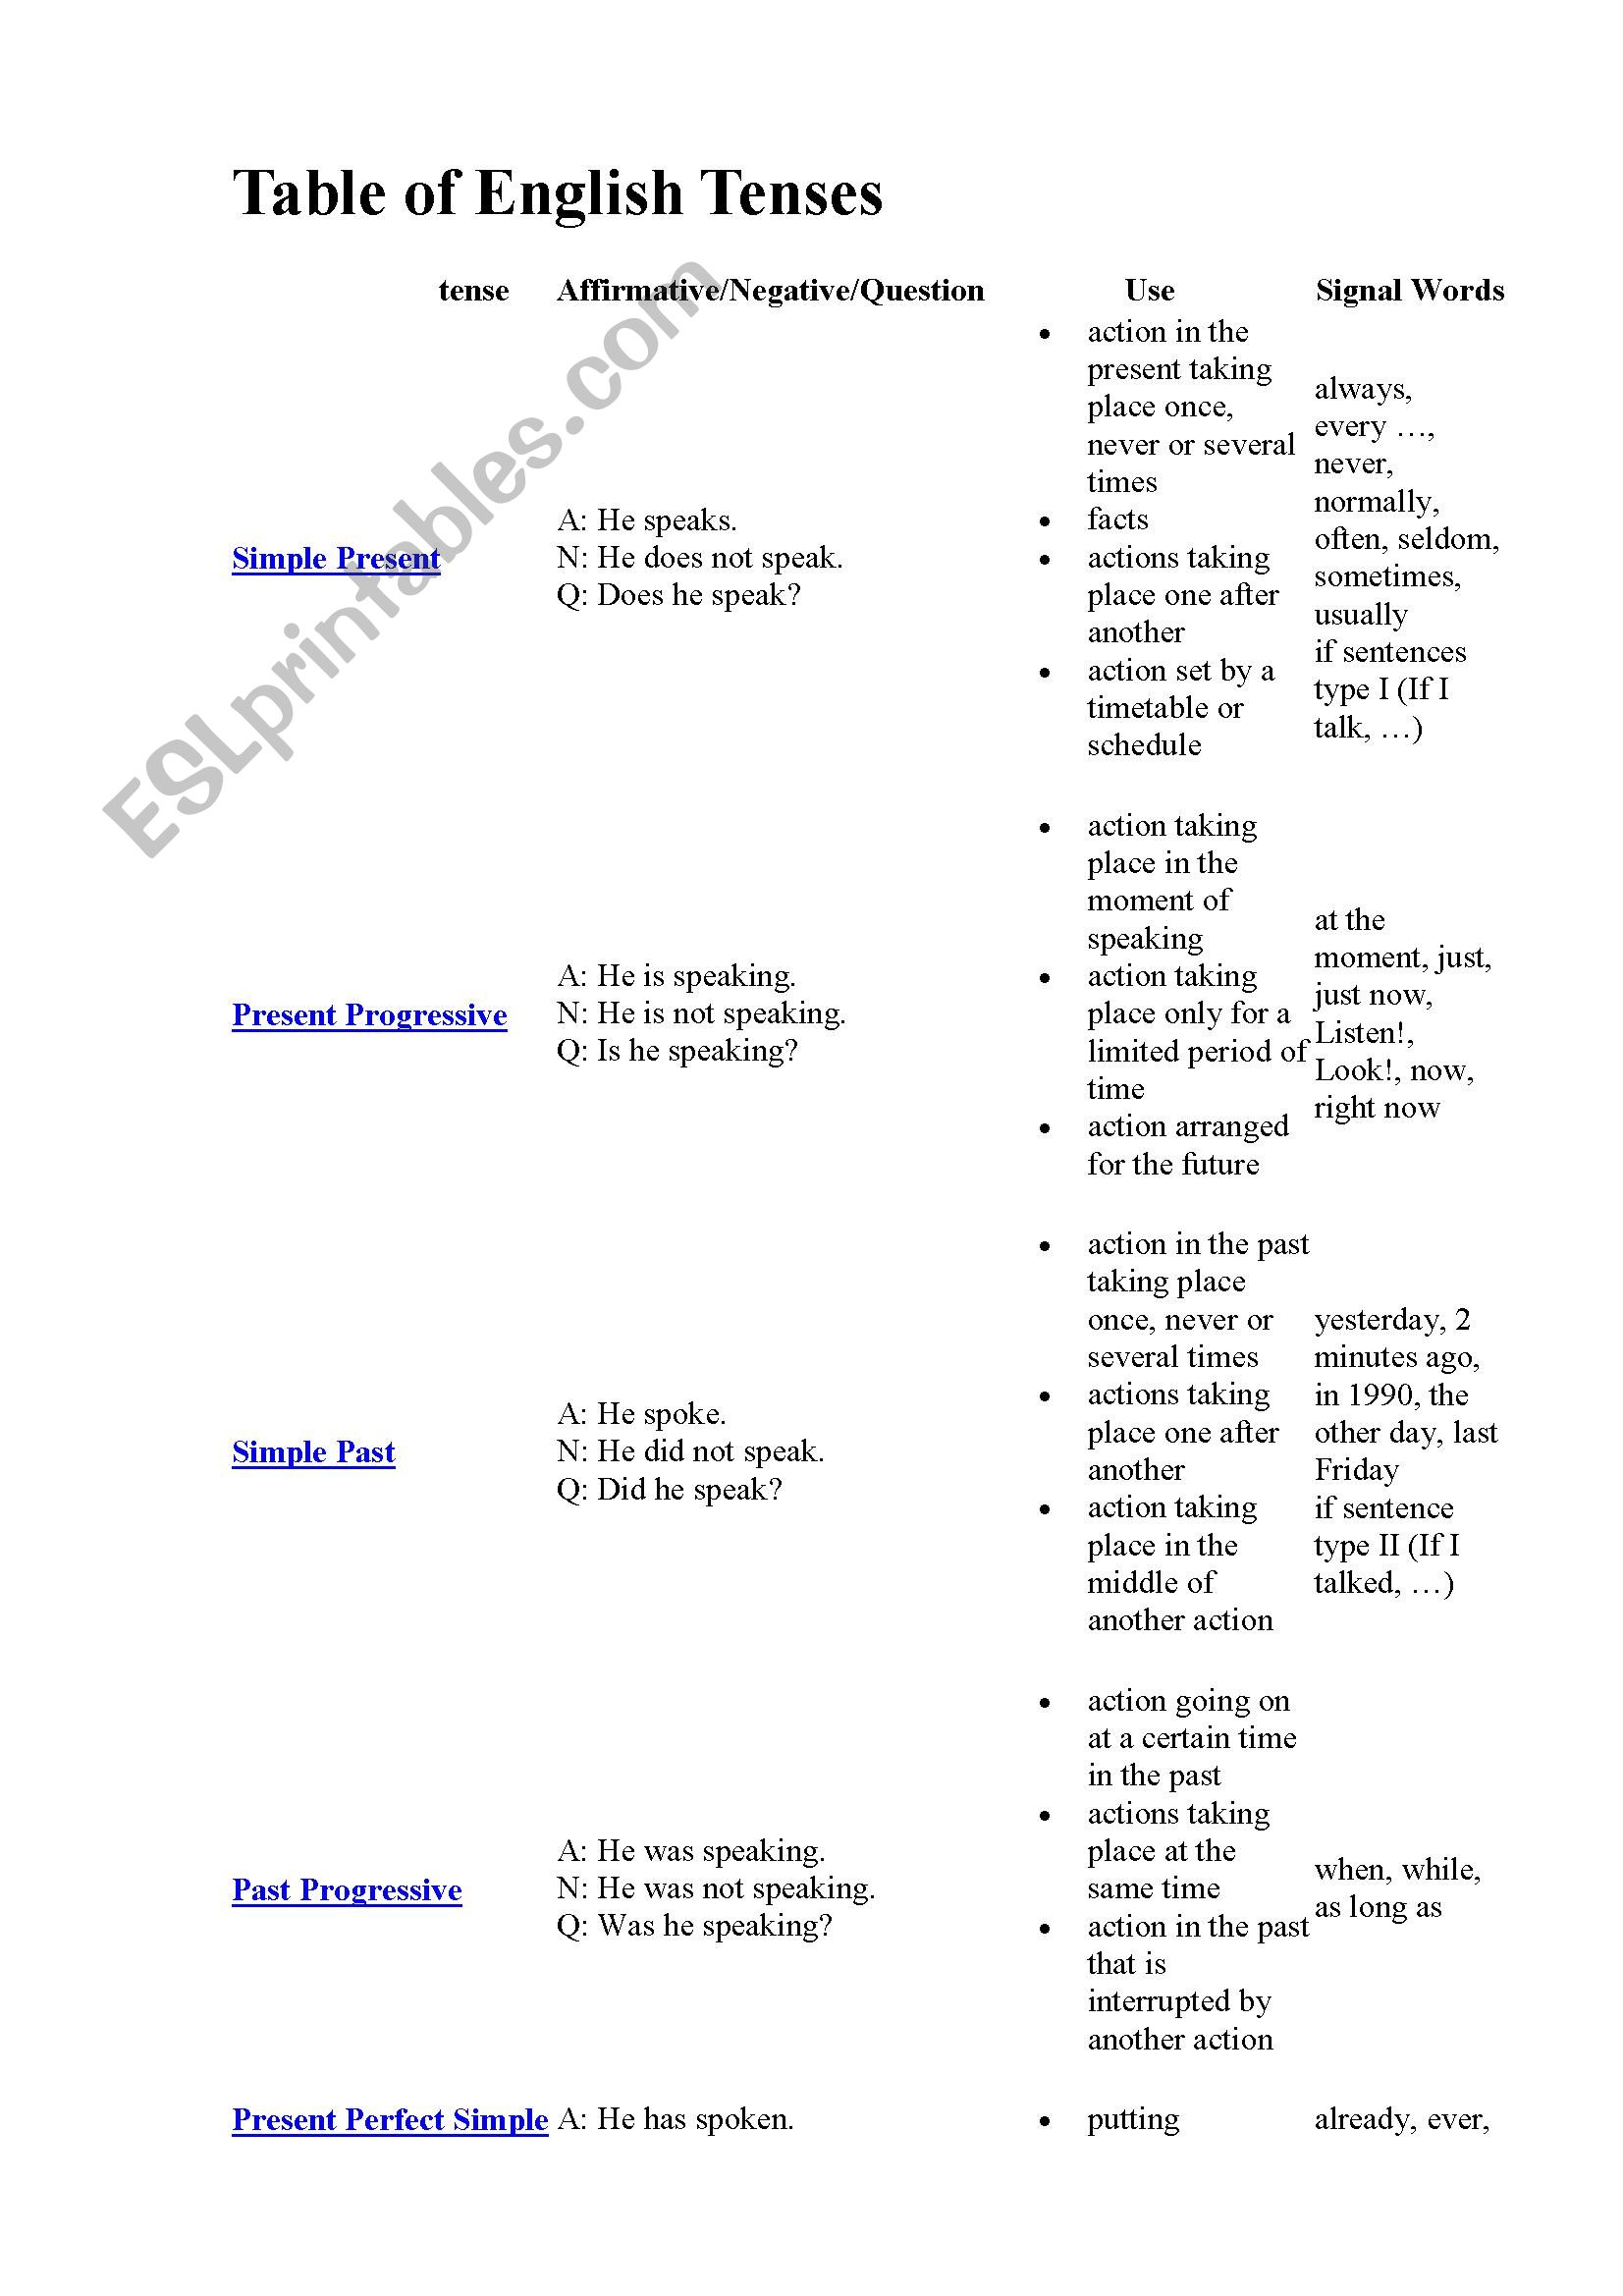 Table of tenses worksheet